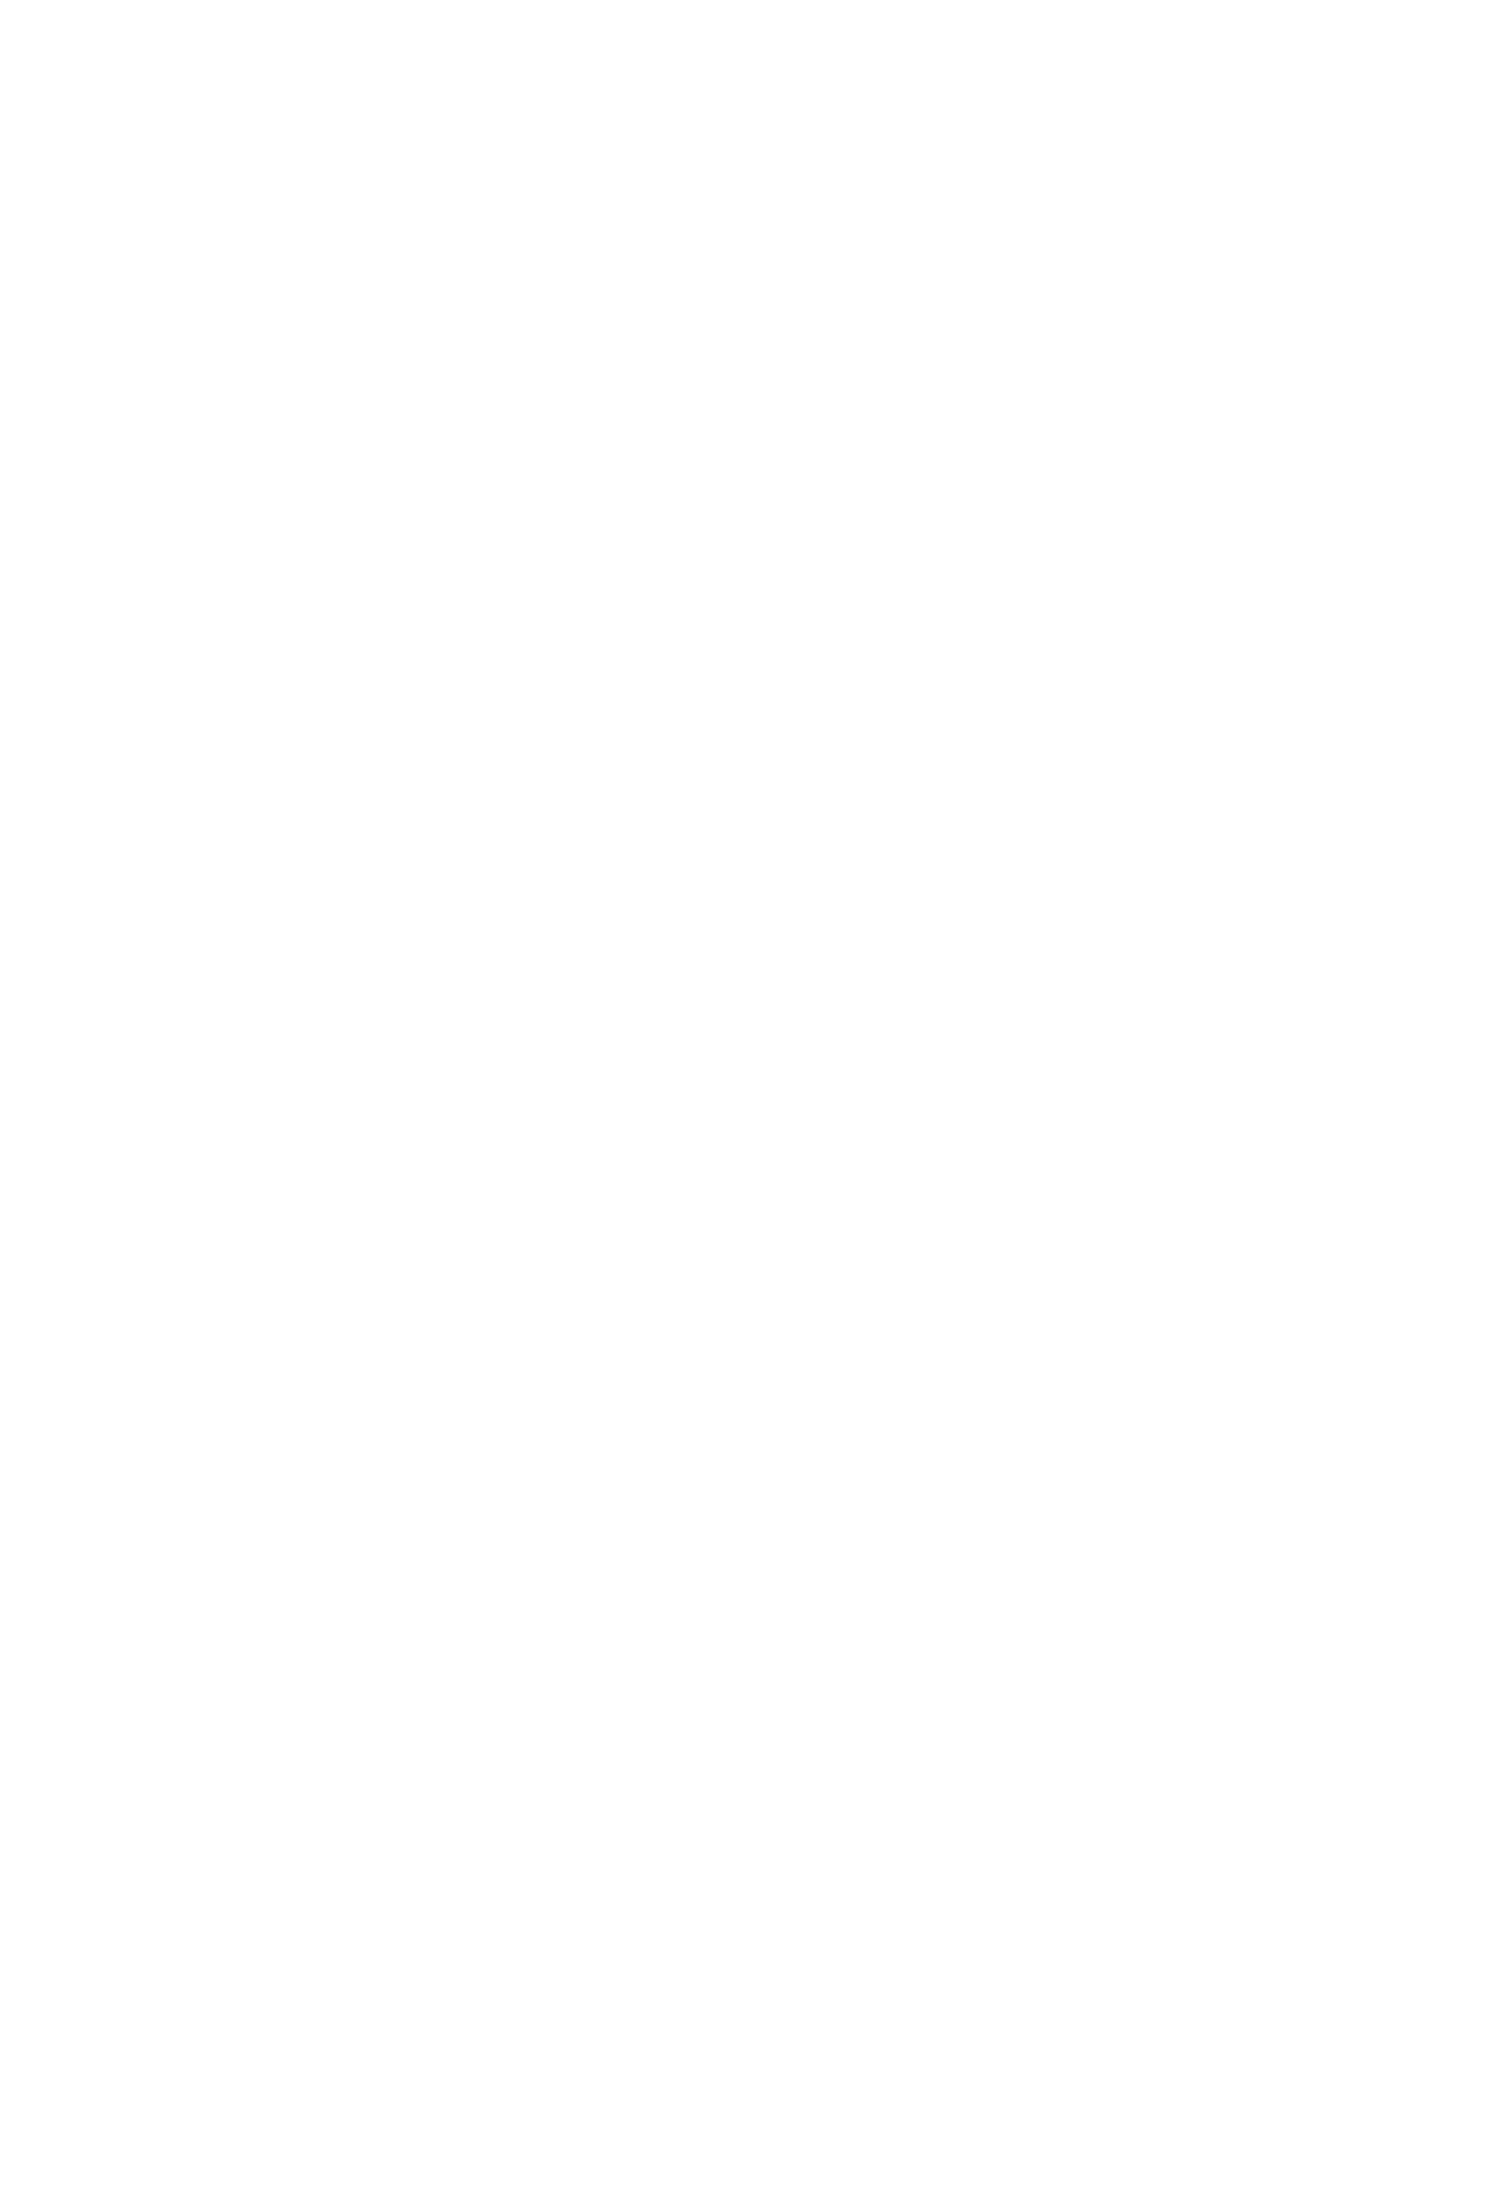 Daisy Mae's Steakhouse